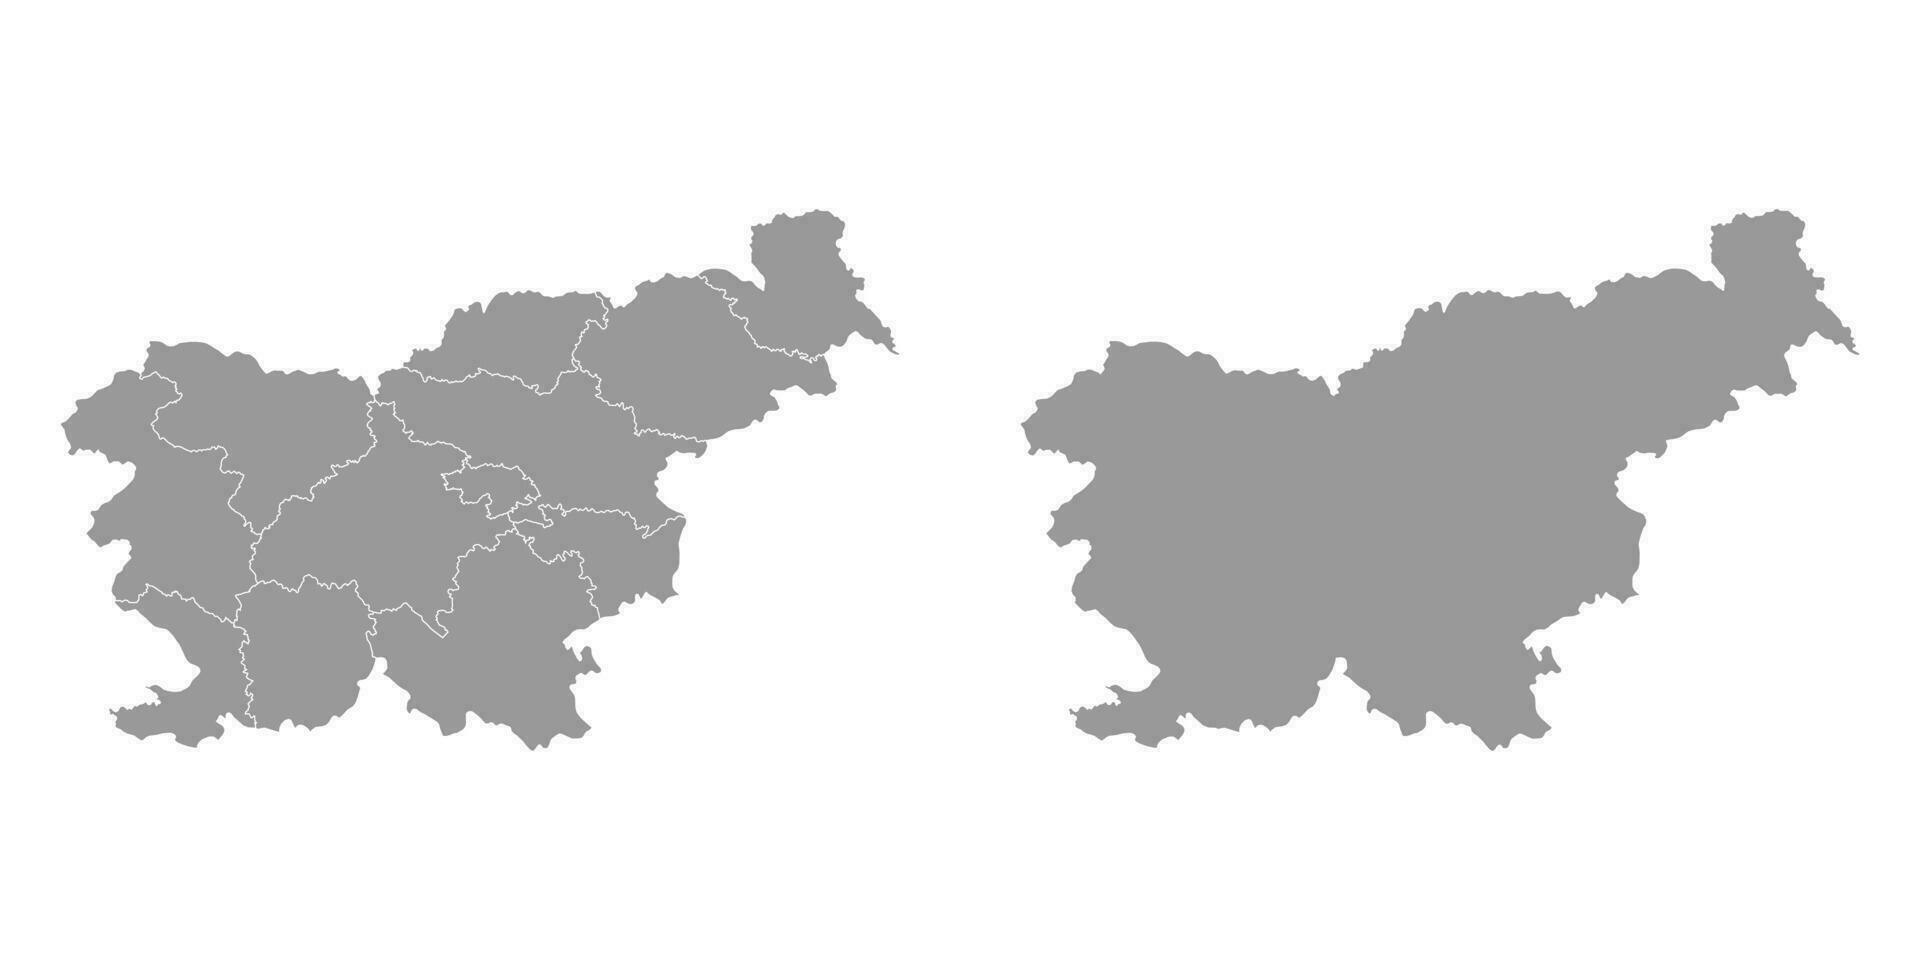 slovenien grå Karta med regioner. vektor illustration.